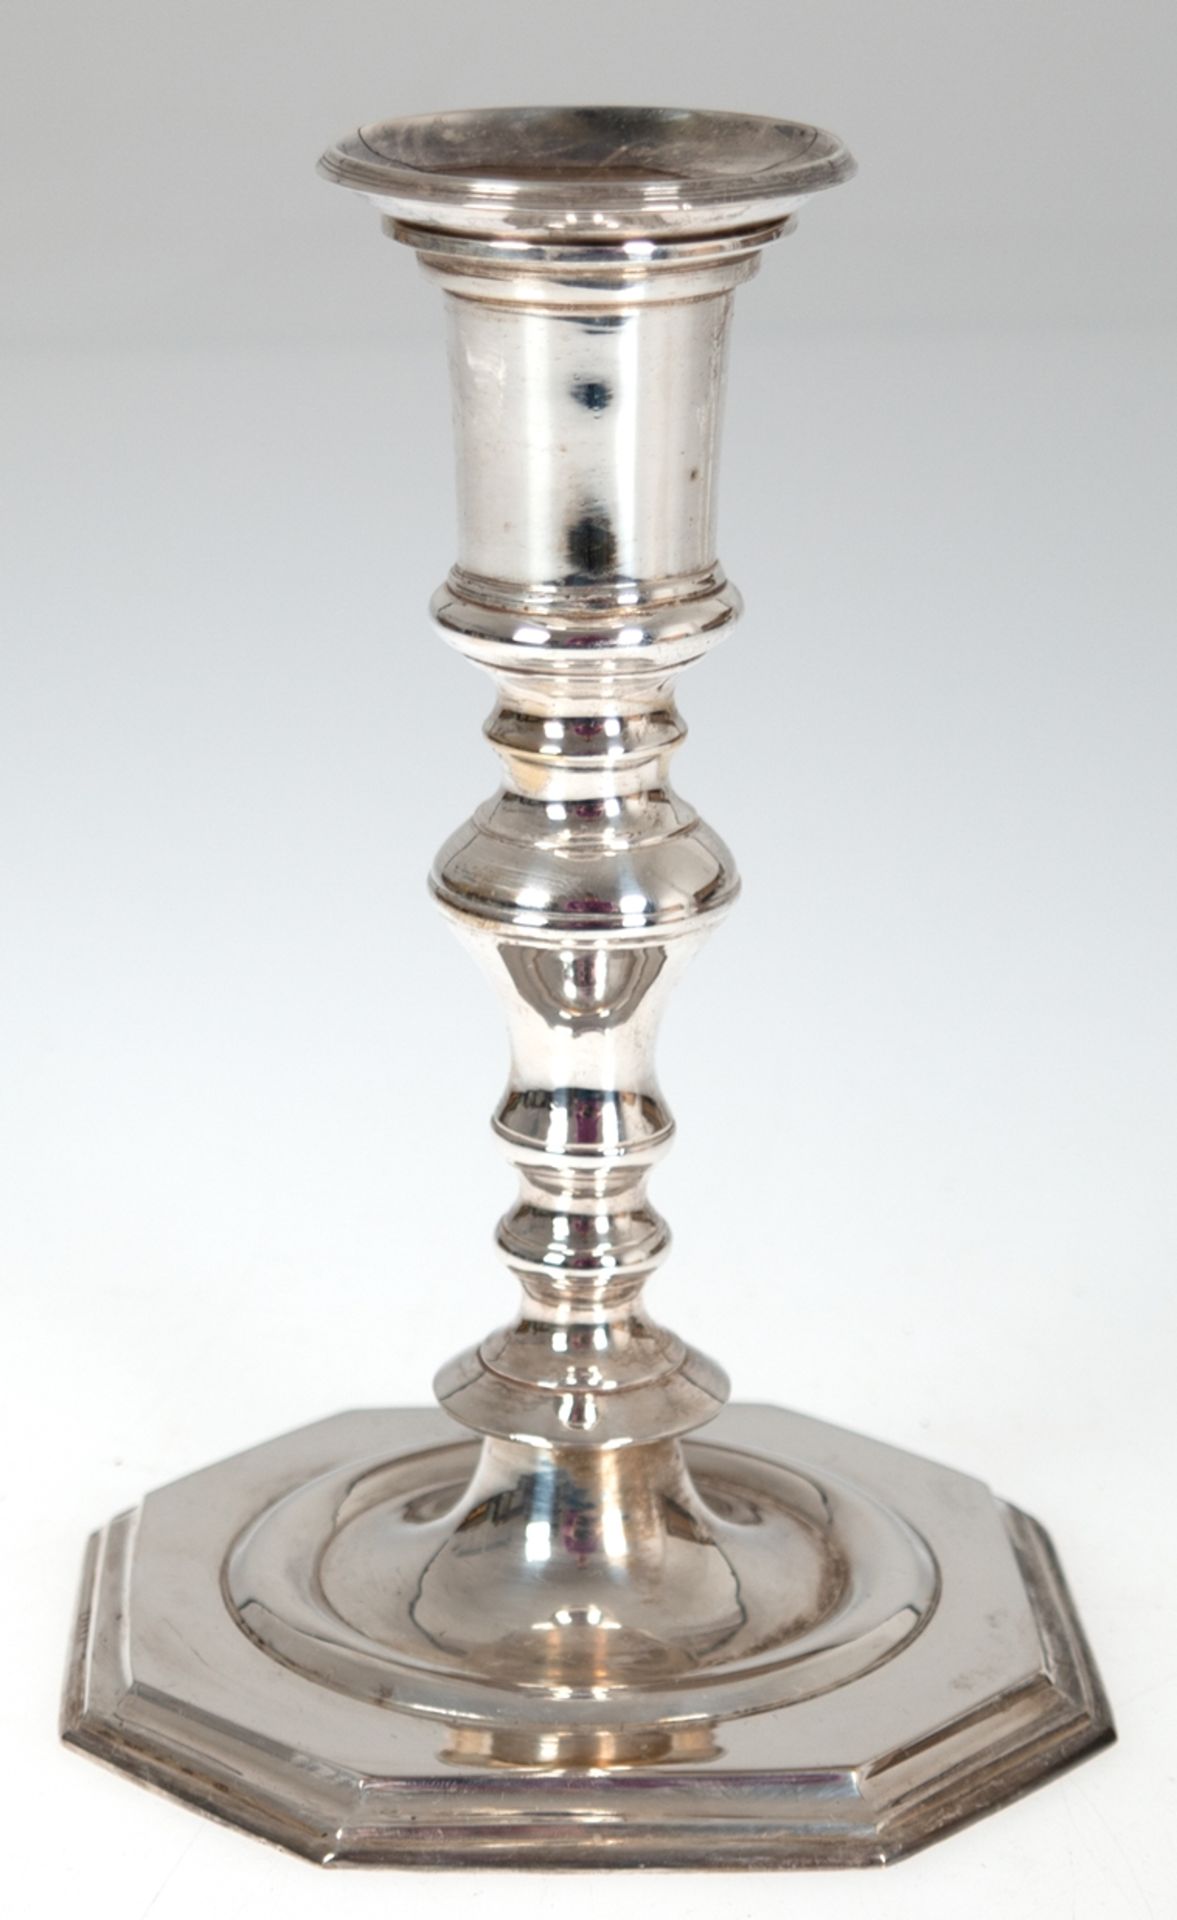 Kerzenhalter, 1-flammig, versilbert, auf achteckigem Fuß, herausnehmbarer Tülleneinsatz, H. 17,5 cm